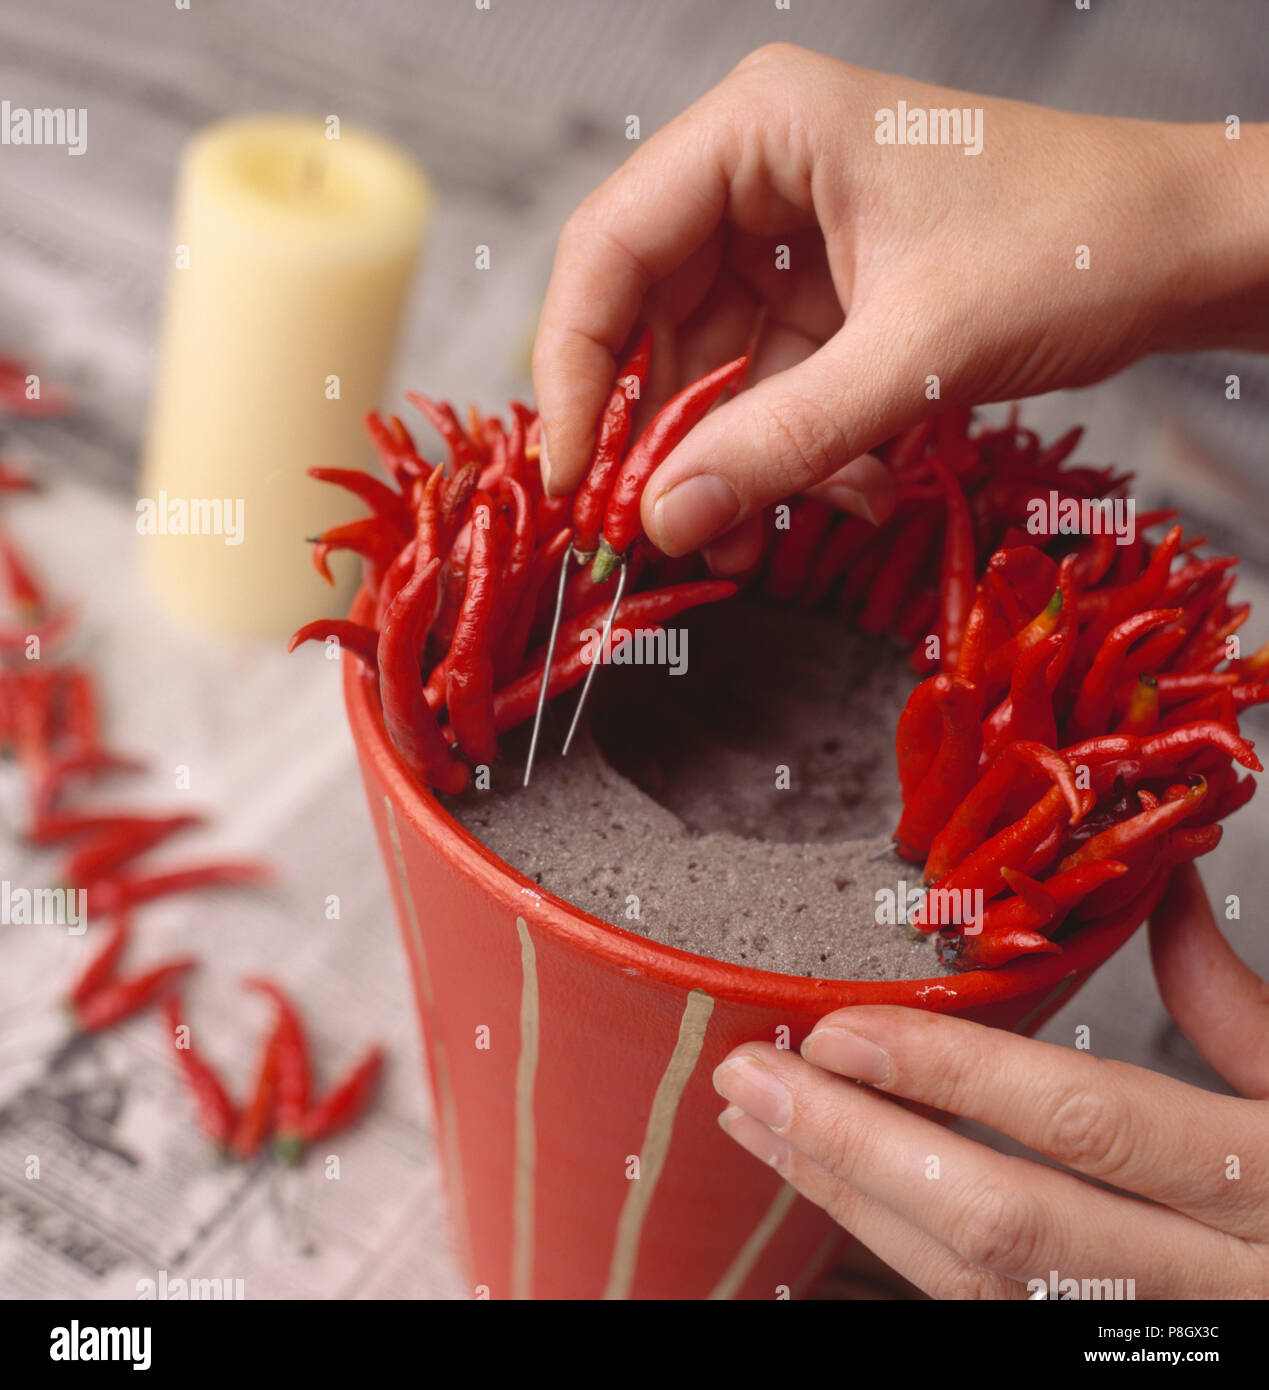 Nahaufnahmen der Hände frische rote Chilis in Rot lackierten Blumentopf zu festliche Tischdekoration für redaktionelle NUR VERWENDEN Stockfoto